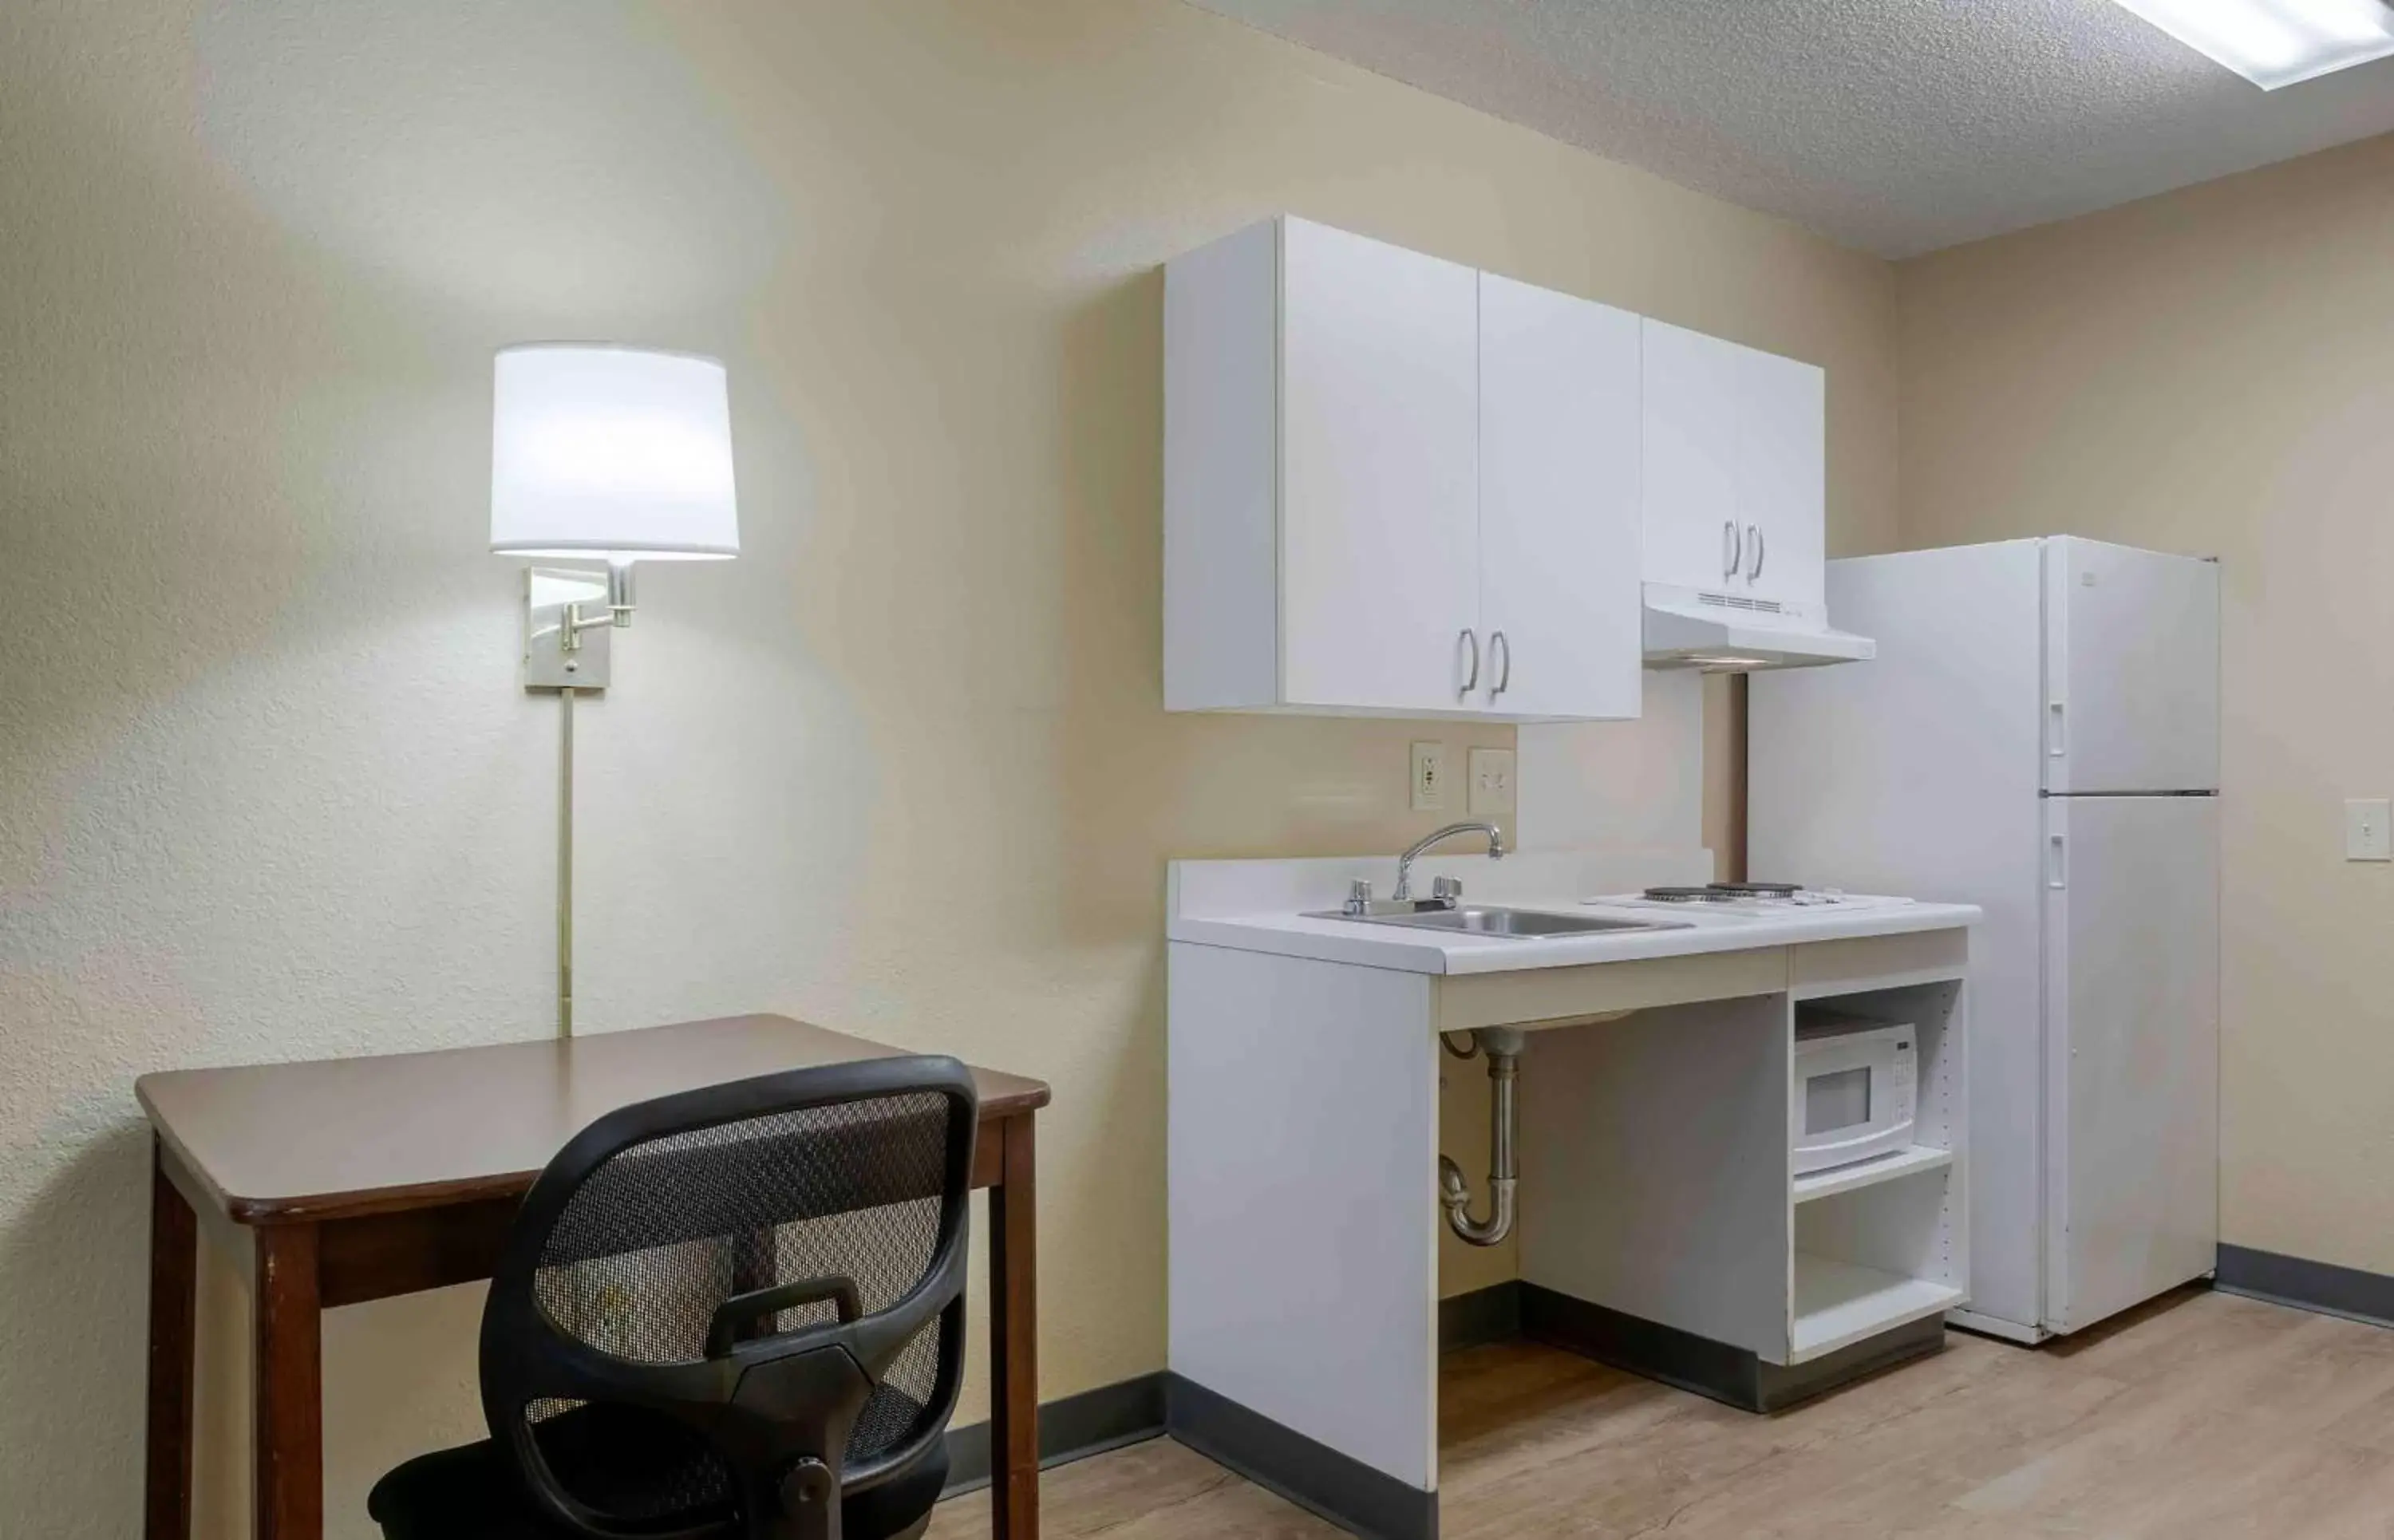 Bedroom, Kitchen/Kitchenette in Extended Stay America Suites - Philadelphia - Horsham - Dresher Rd